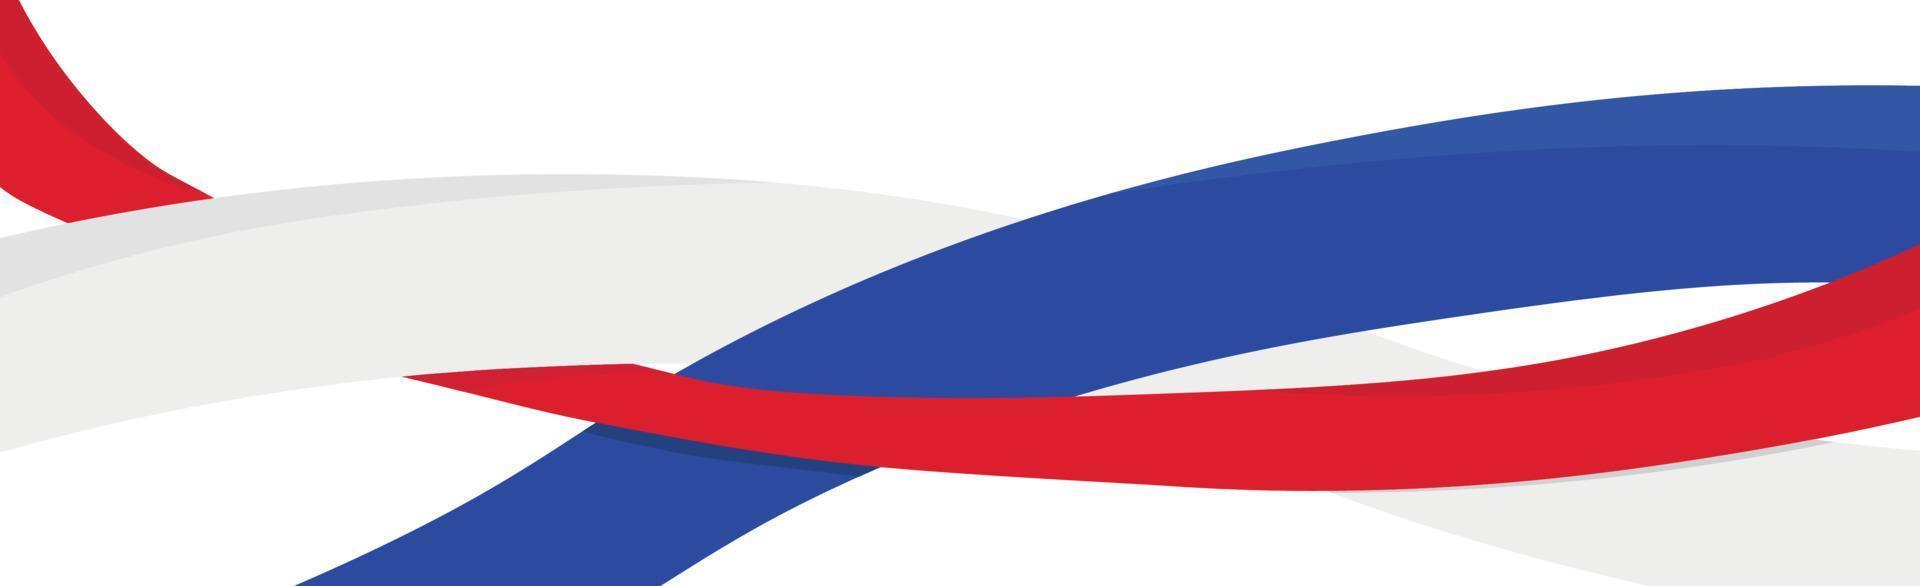 bandera abstracta panorámica de la federación rusa sobre un fondo blanco - vector